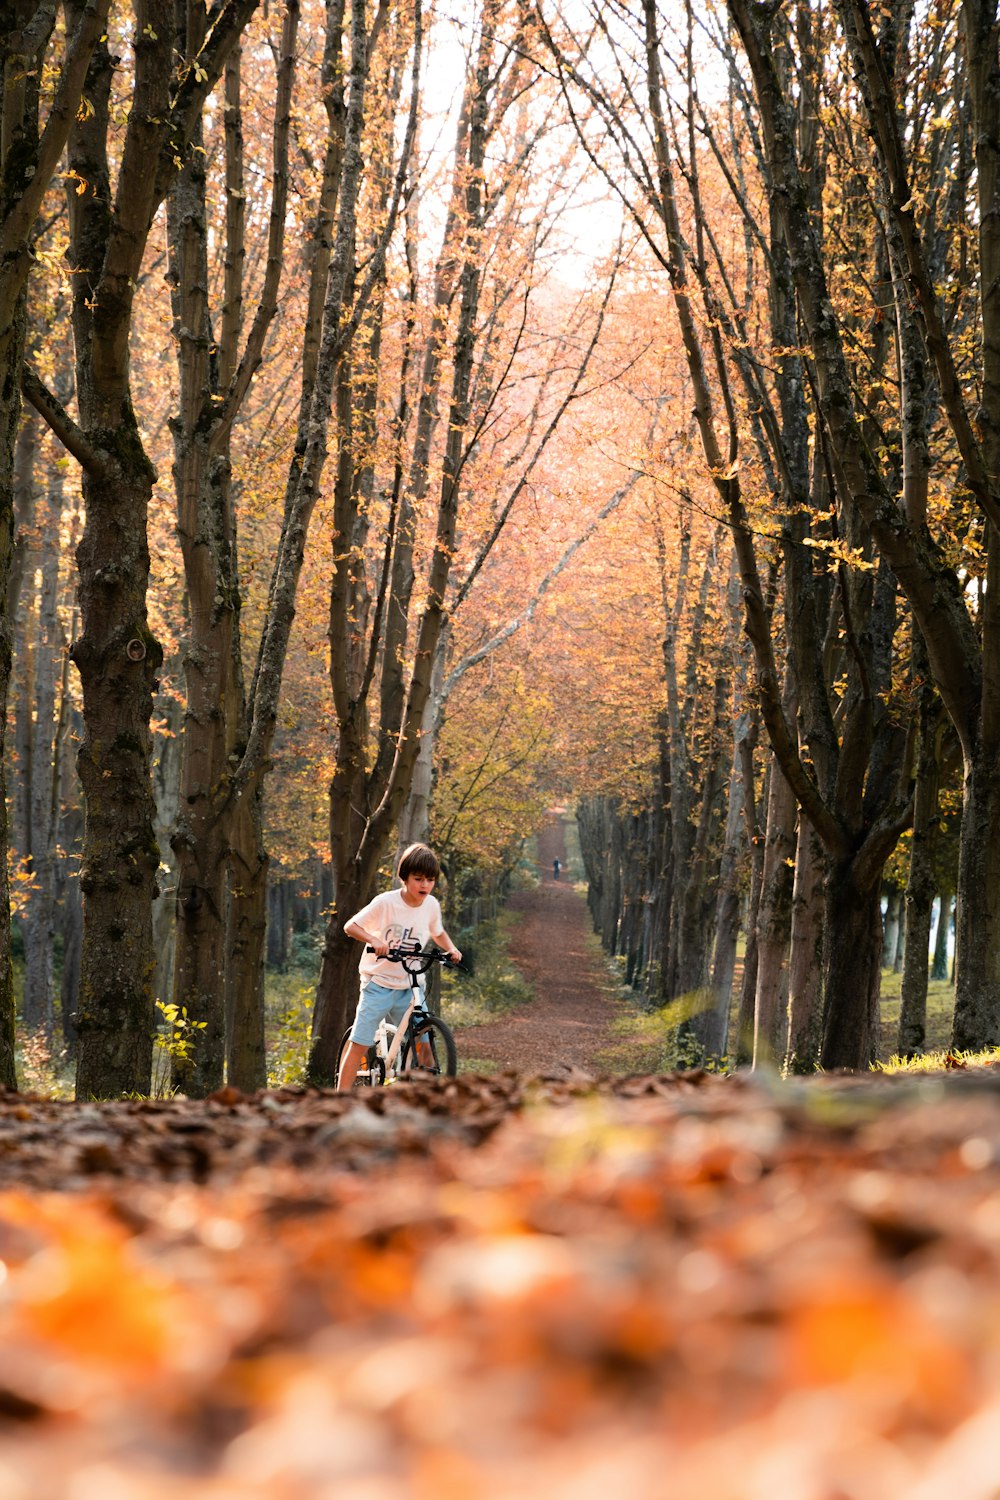 Ein Mann fährt mit dem Fahrrad eine mit Blättern bedeckte Straße hinunter